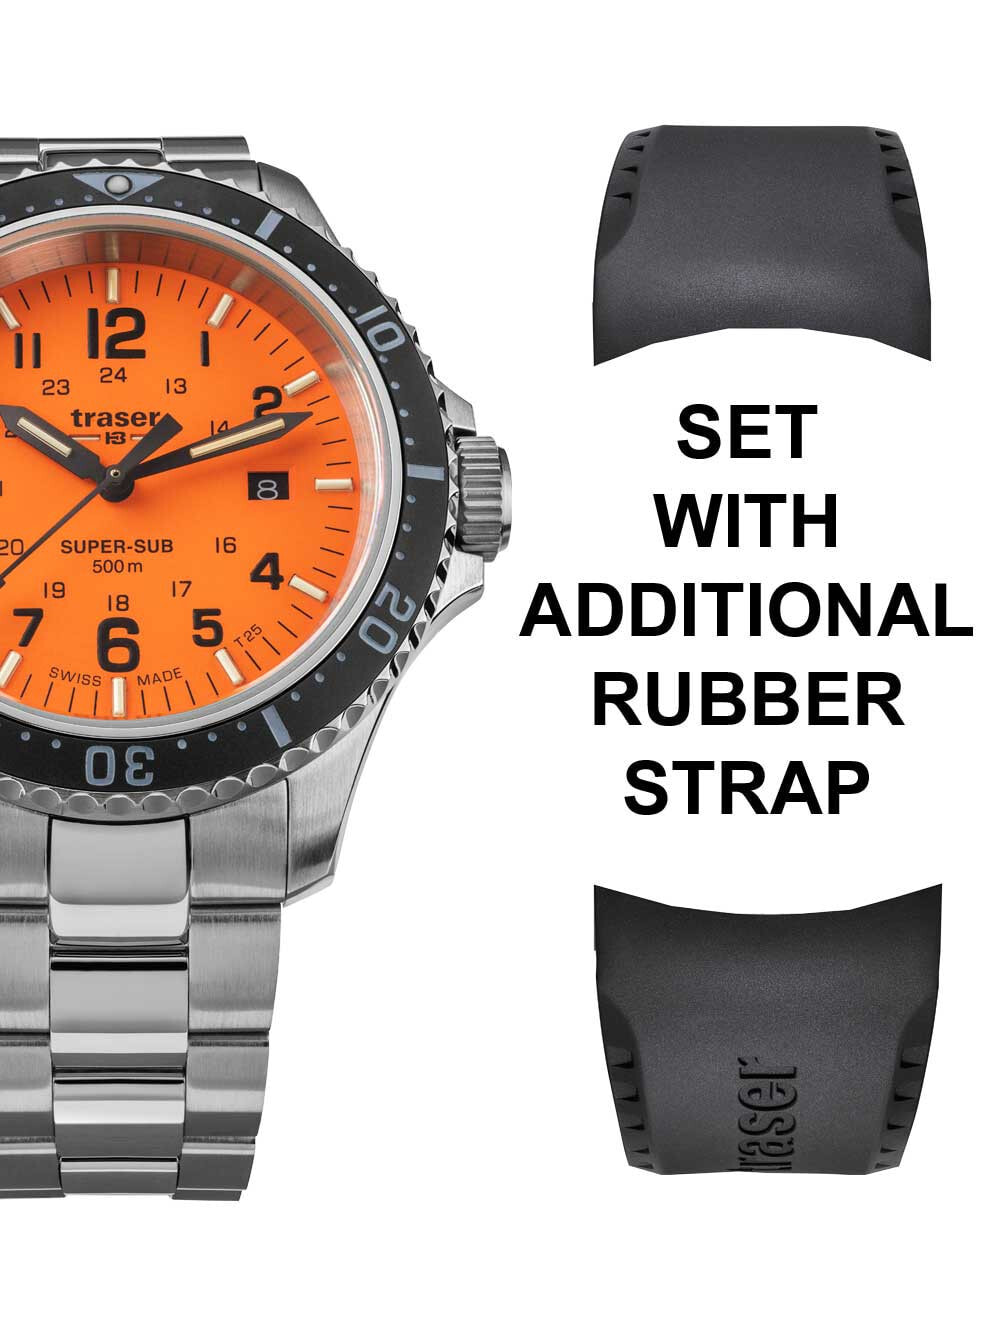 Мужские наручные часы с серебряным браслетом и запасным черным кожаным ремешком Traser H3 109379 P67 T25 SuperSub set orange 46 mm diver 50ATM